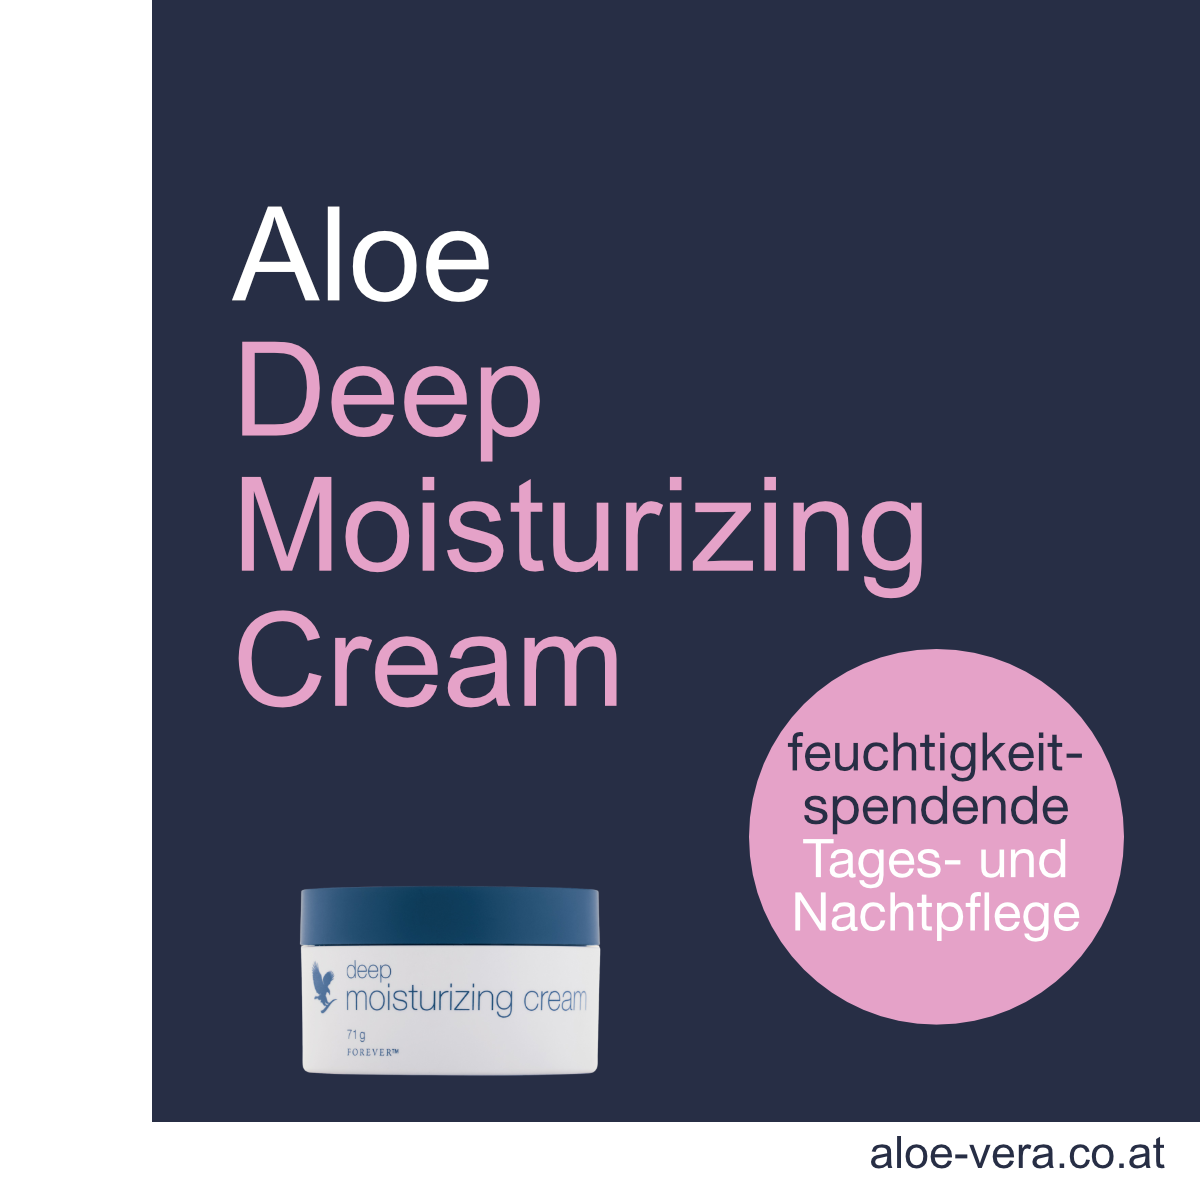 Forever Aloe Deep Moisturizing Cream Feuchtigektscreme Tagescreme Nachtcreme reichhaltig kaufen